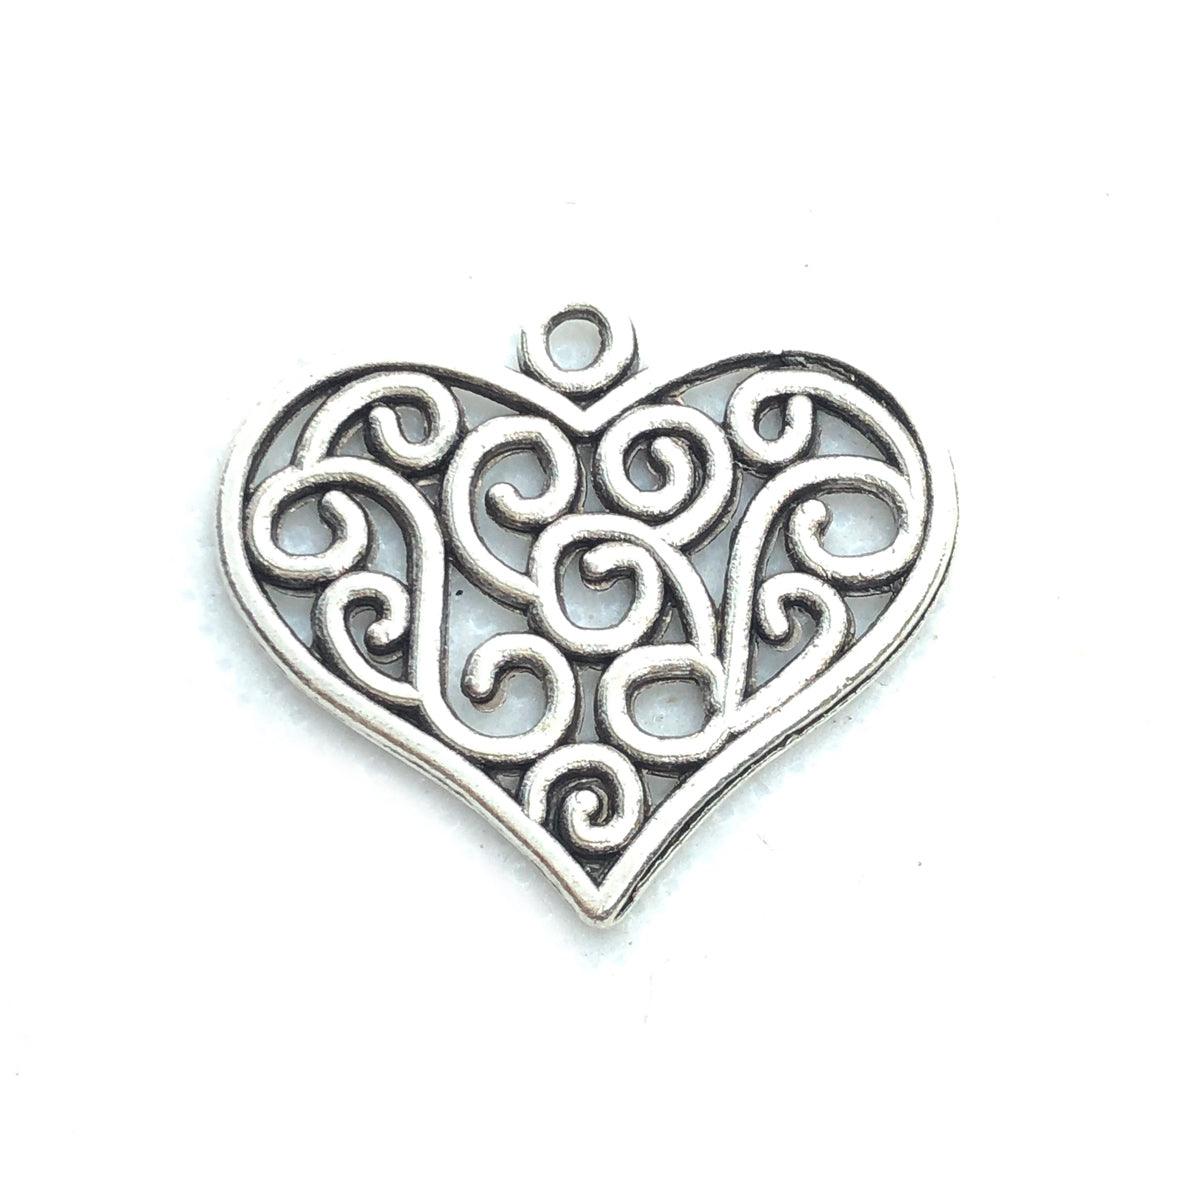 25mm Antique Silver Heart Pendant